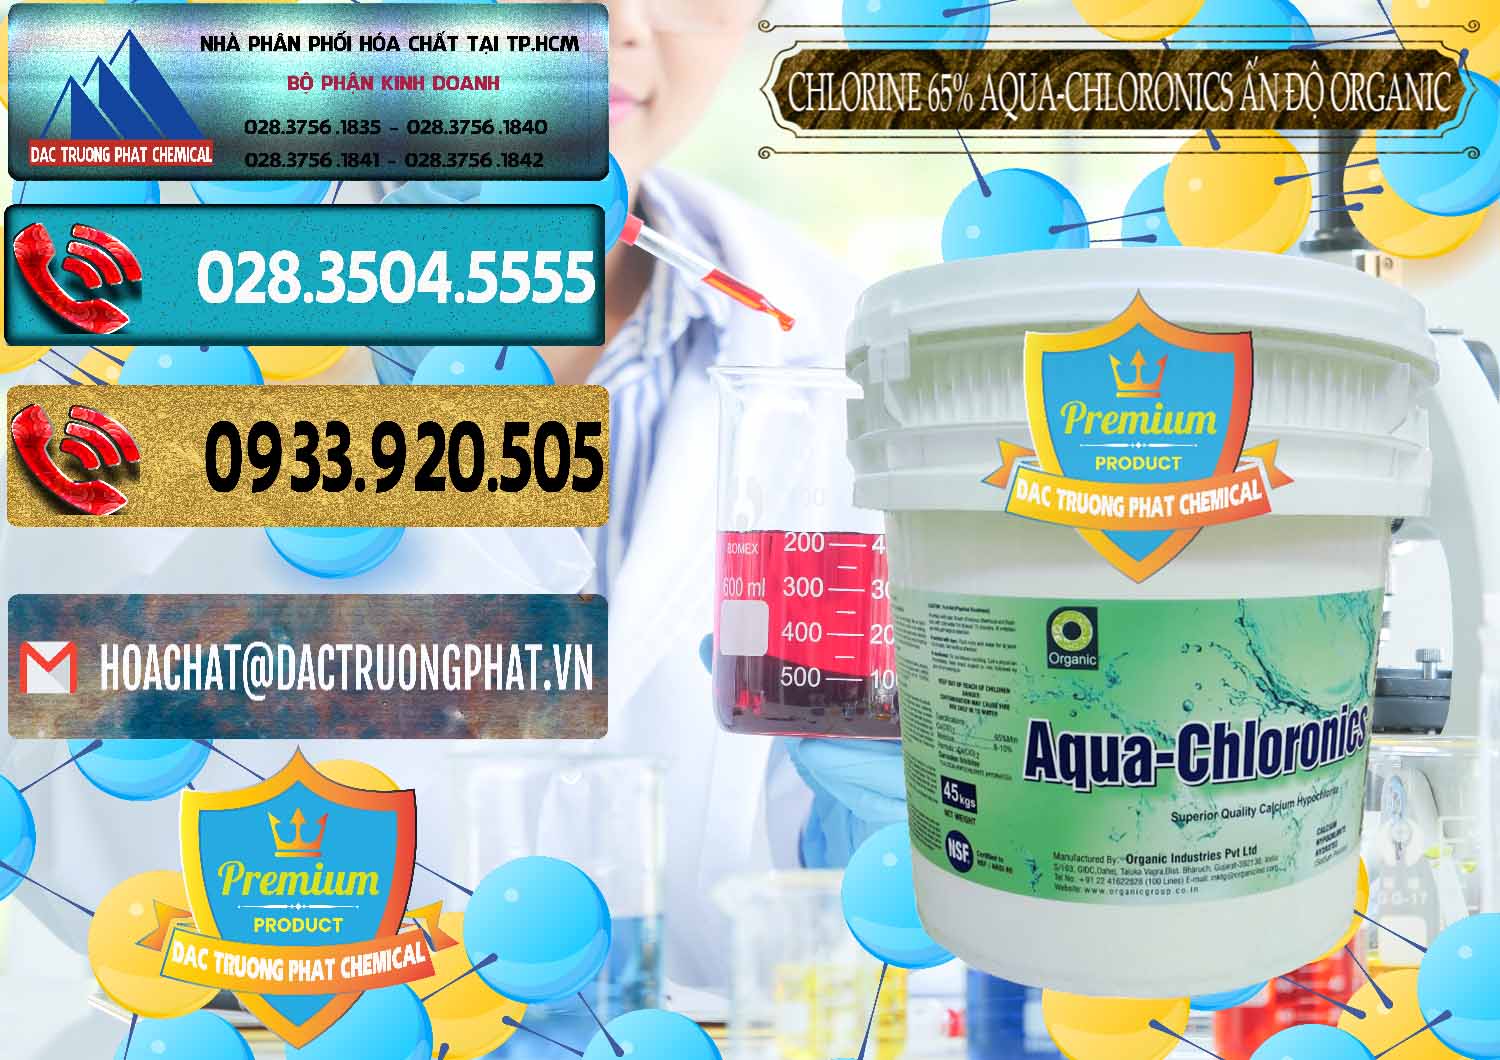 Phân phối ( bán ) Chlorine – Clorin 65% Aqua-Chloronics Ấn Độ Organic India - 0210 - Kinh doanh và cung cấp hóa chất tại TP.HCM - hoachatdetnhuom.com